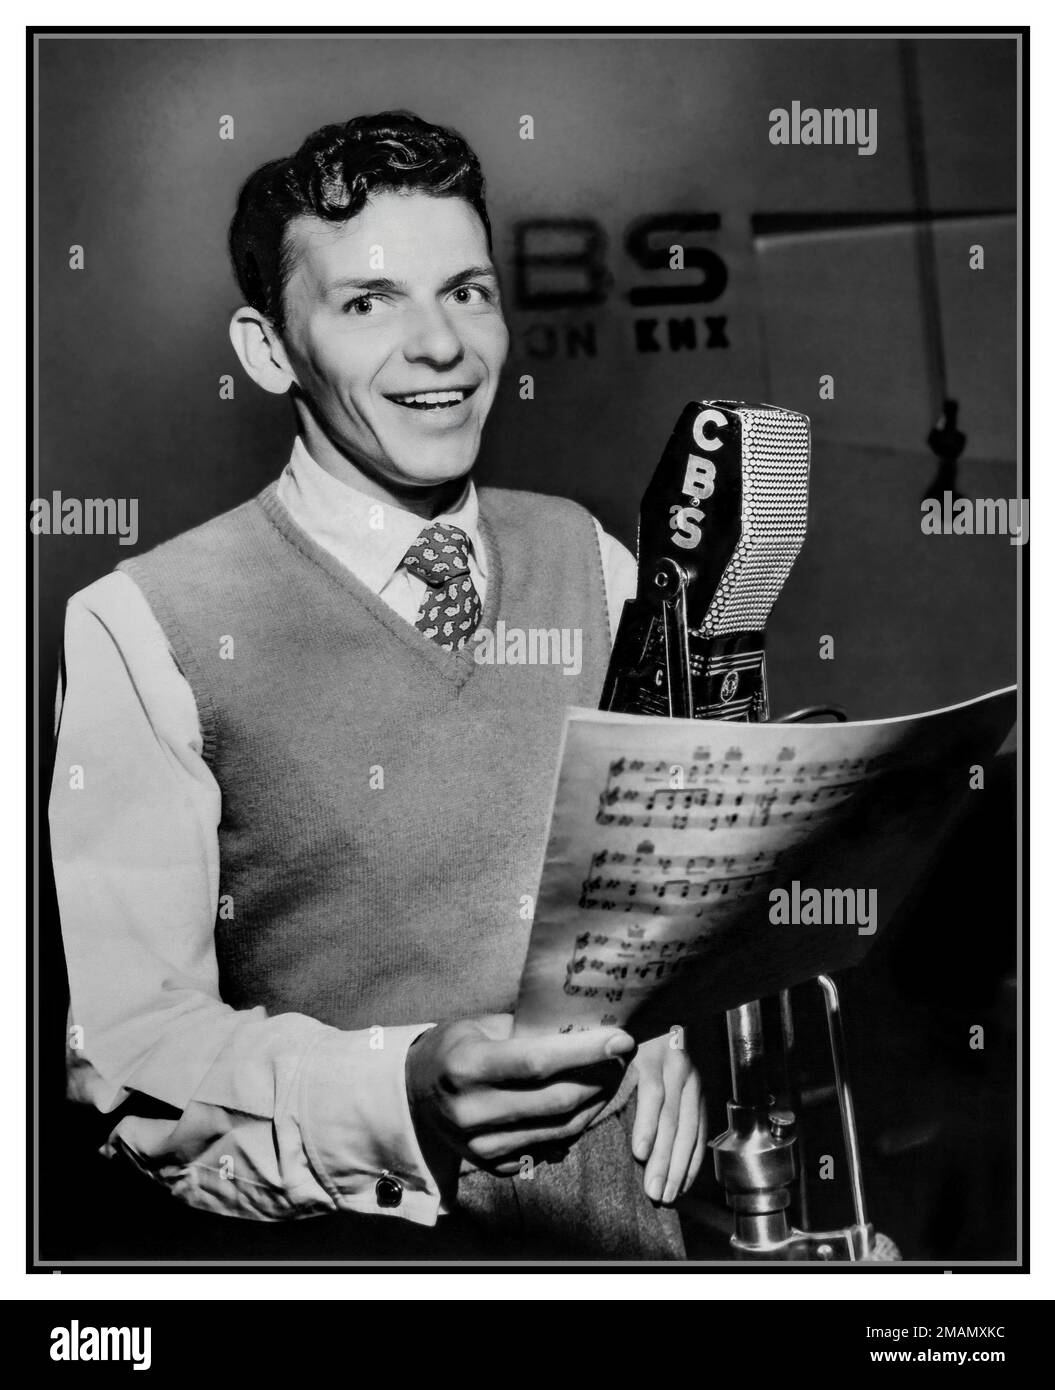 FRANK SINATRA 1940er Publicity Foto von Frank Sinatra in 1944 mit einem CBS-Mikrofon, Werbung für die Frank Sinatra Show auf CBS Radio Hollywood Publicity still America USA. Stockfoto